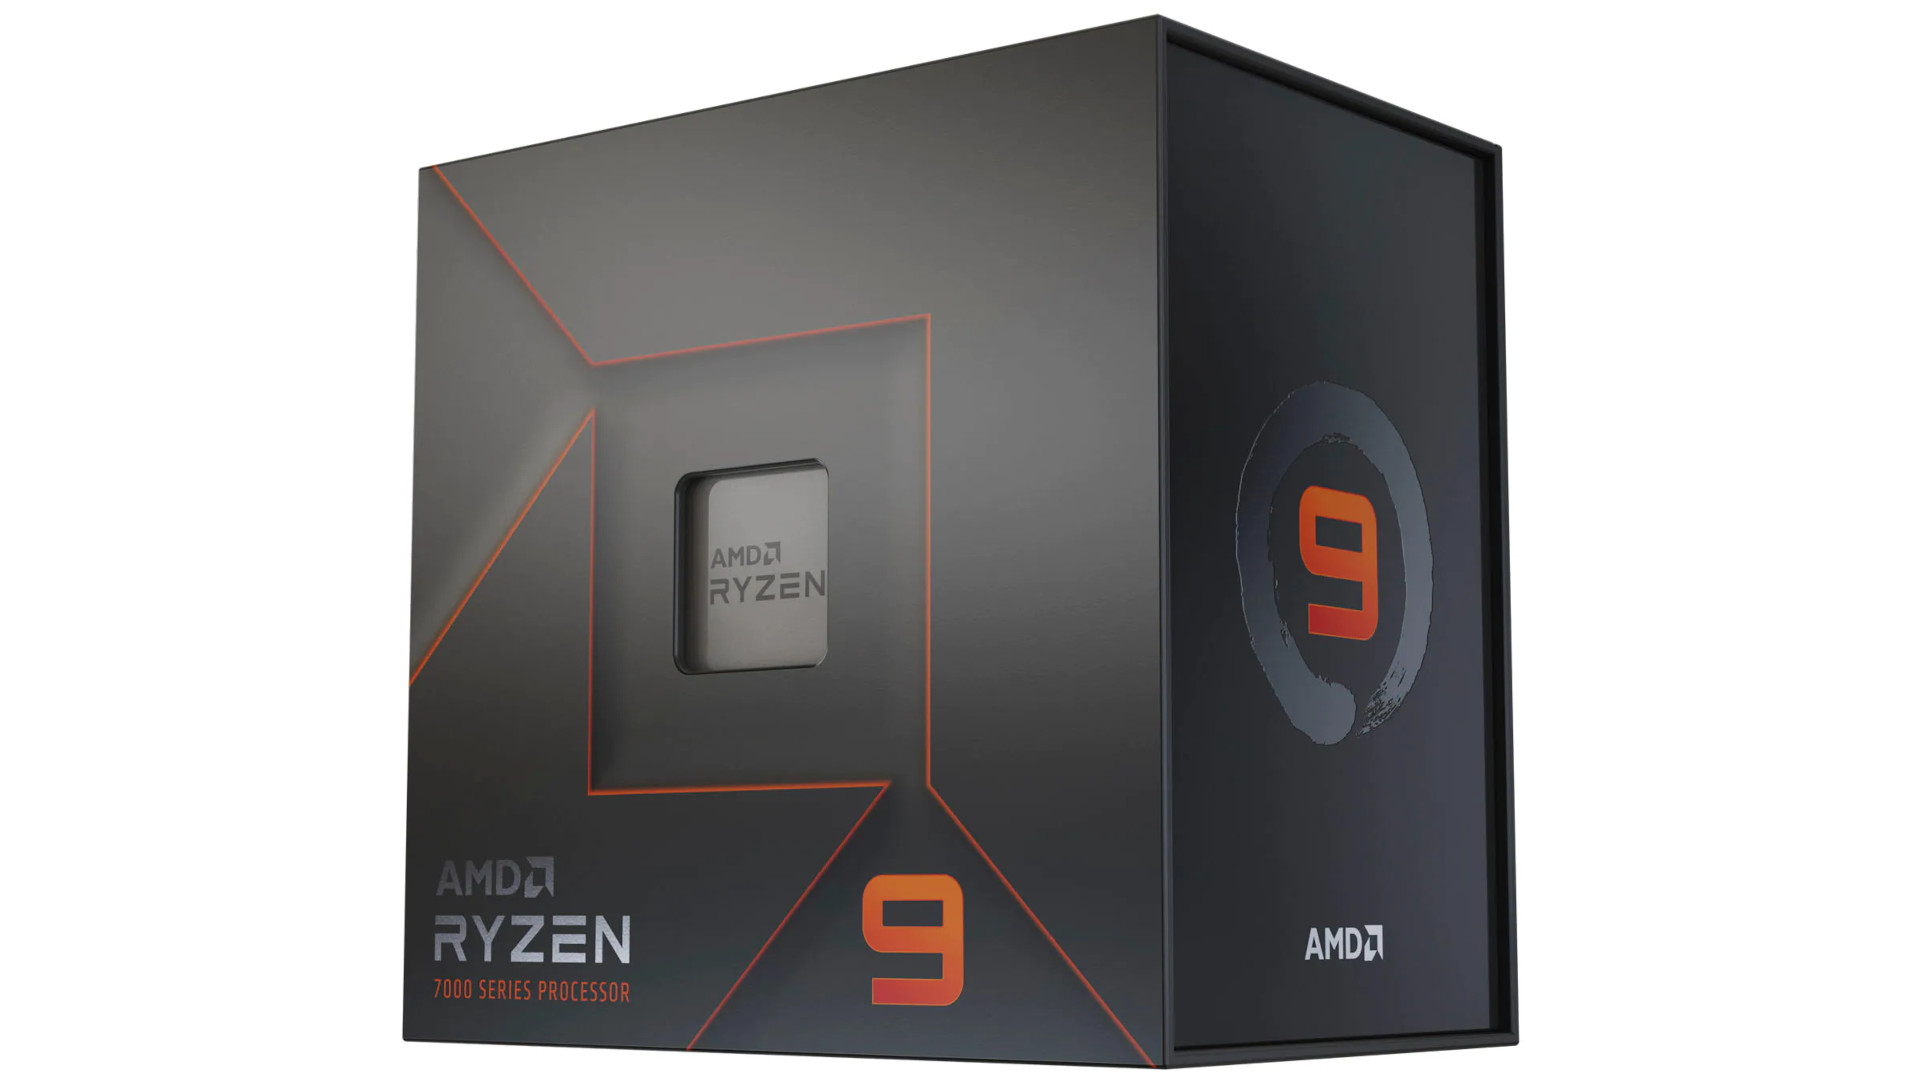 Die leistungsstärkste AMD -Gaming -CPU ist der AMD Ryzen 9 7950x